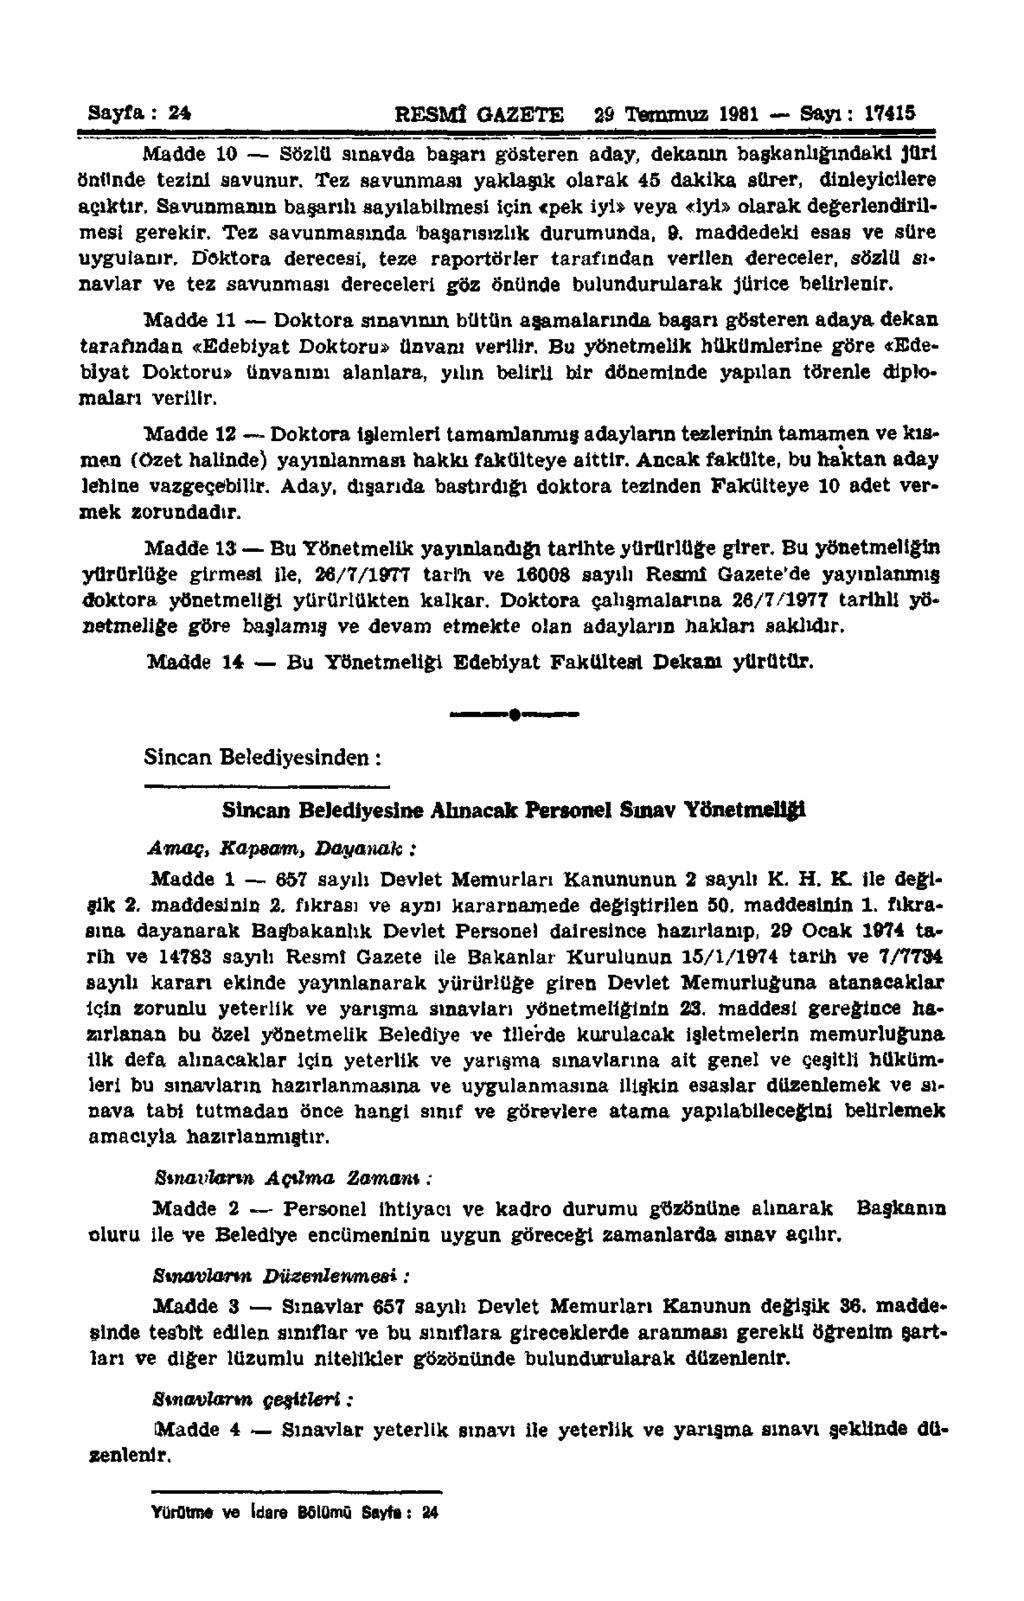 Sayfa: 24 RESMİ GAZETE 29 Temmuz 1981 Sayı: 17415 Madde 10 Sözlü sınavda başarı gösteren aday, dekanın başkanlığındaki Jüri önünde tezini savunur.